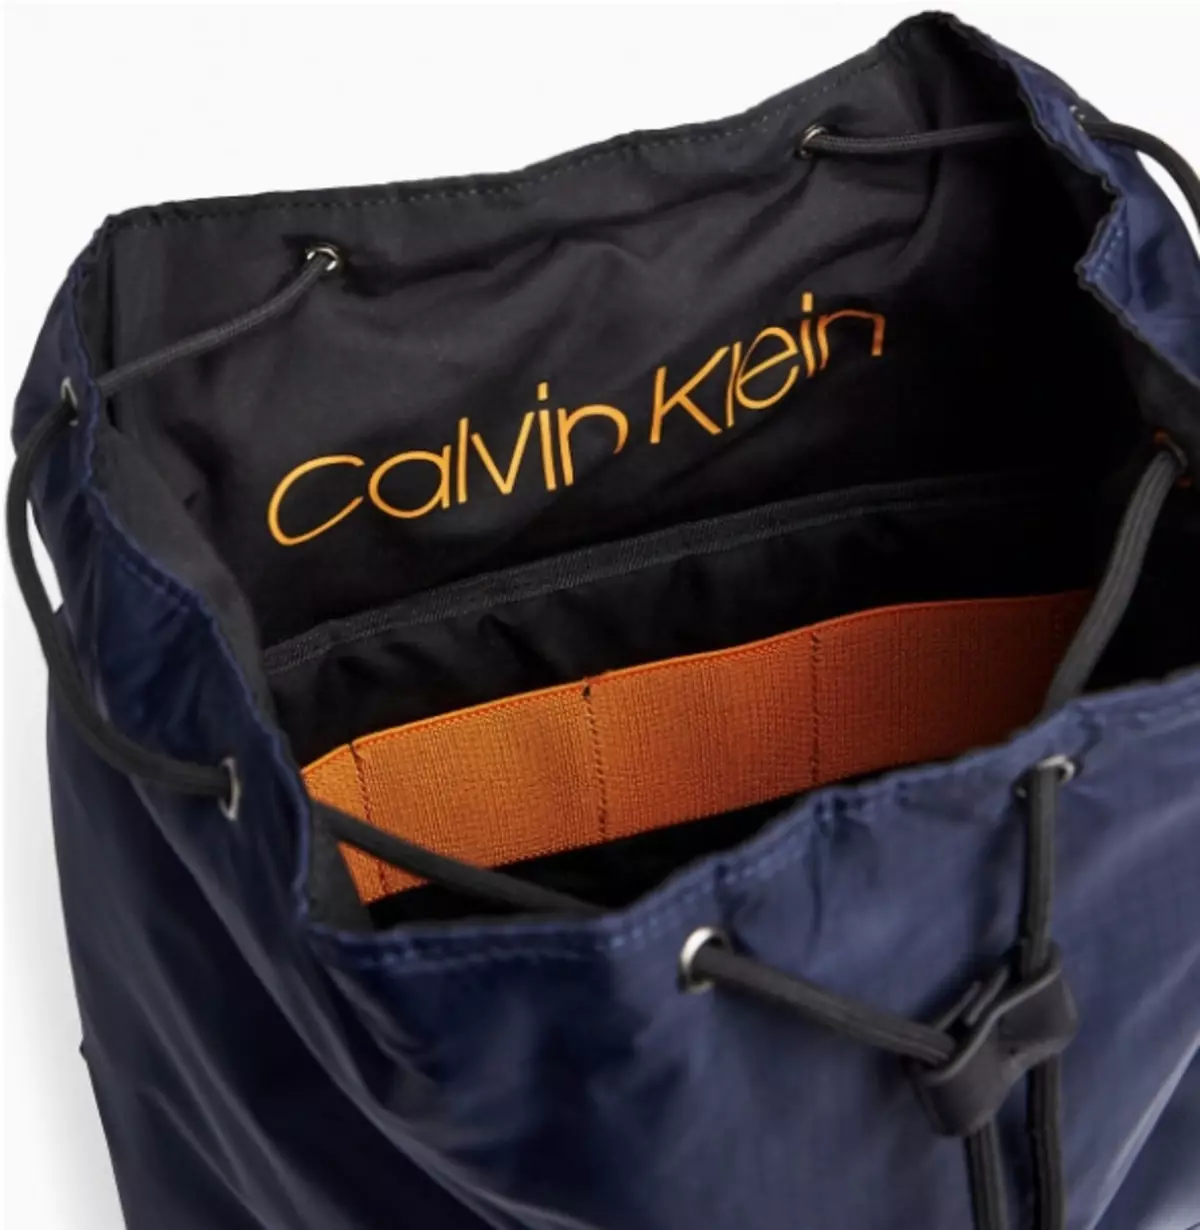 Backpacks Calvin Klein: femminili iswed u raġel, aħmar tal-ġilda, abjad, isfar b'monogramm u boroż oħra tal-kuluri - backpacks 15401_35